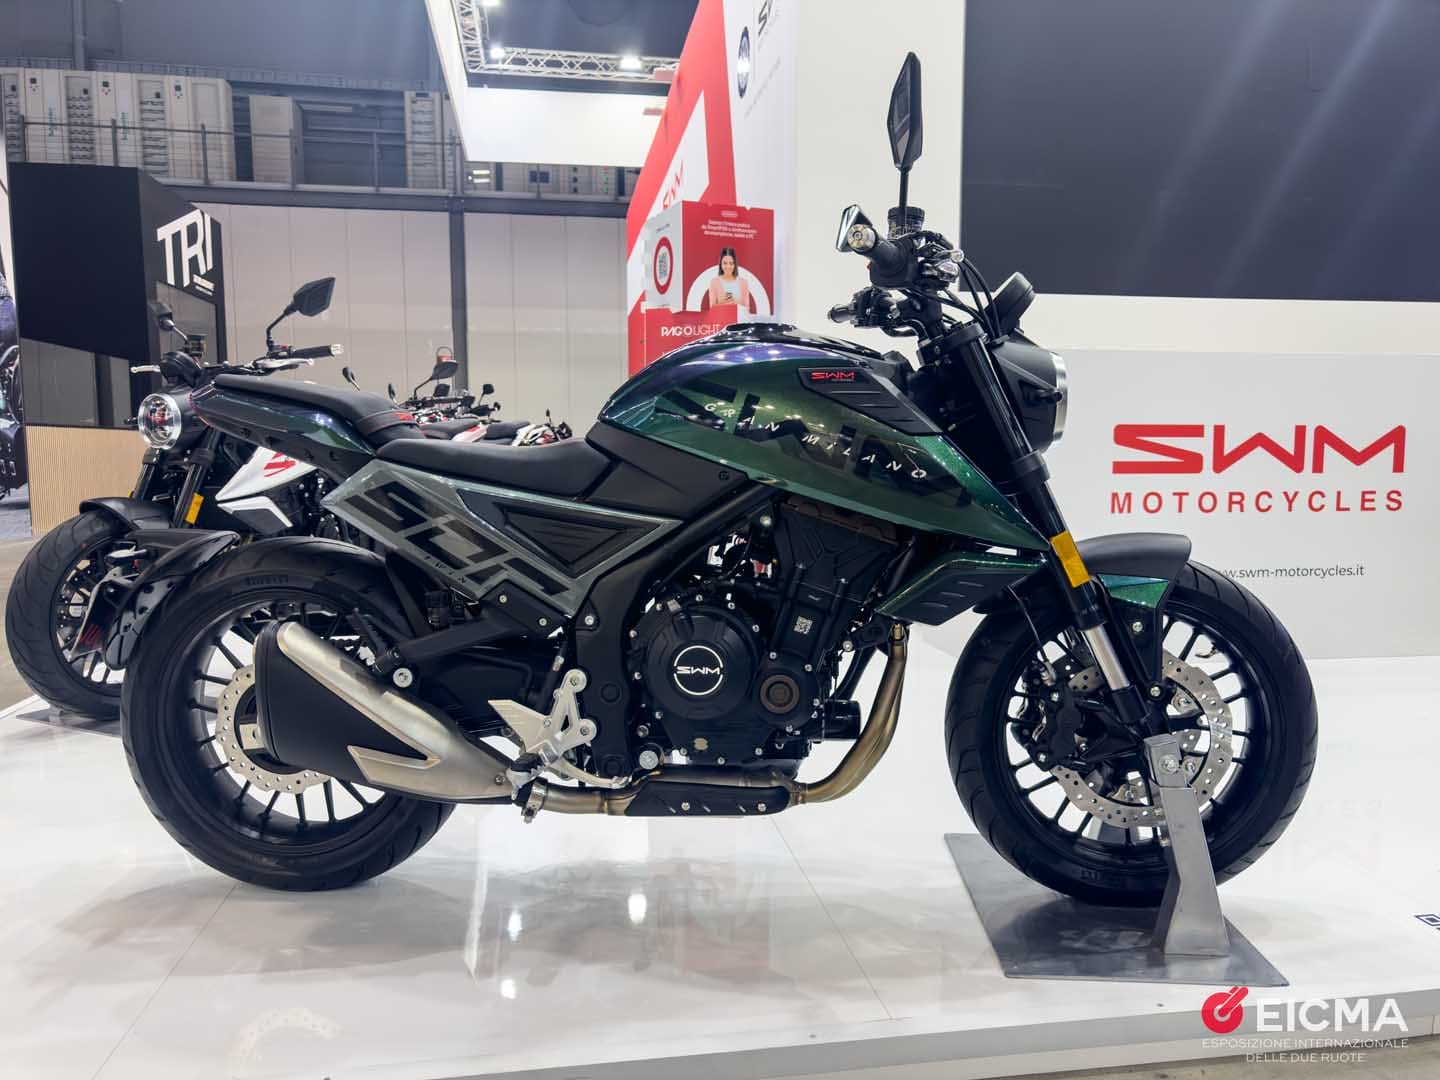 Shineray prepara chegada da SYM Motorcycles ao Brasil